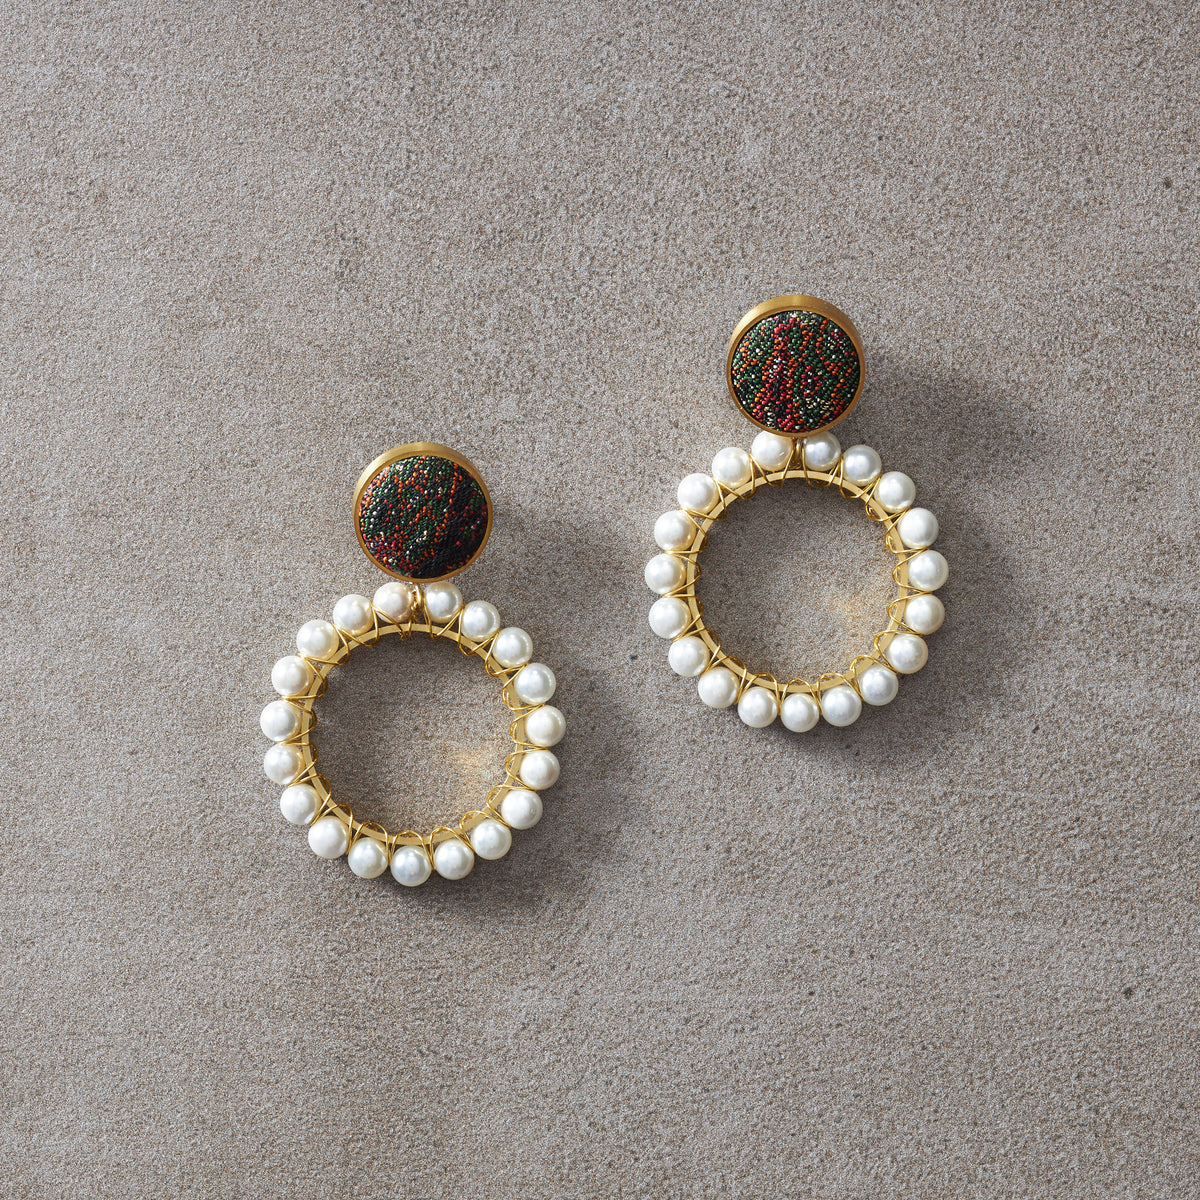 Vintage inspired statement pearl earrings ZIB009